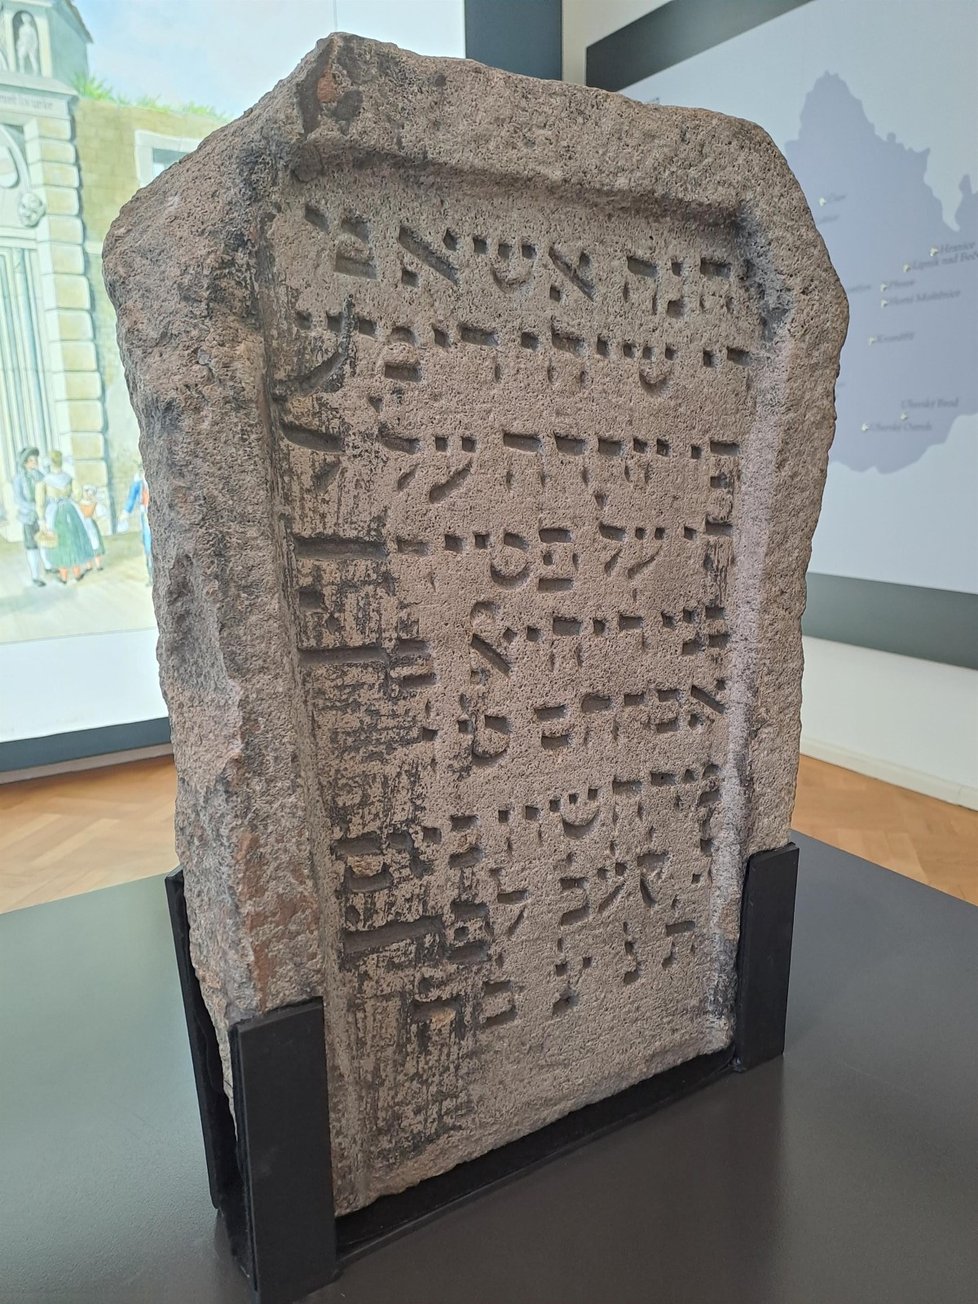 Nejstarší předmět v expozici. Židovský náhrobek z roku 1411 našli v Brně za hradbami nedaleko nádraží a veřejně je k vidění poprvé.